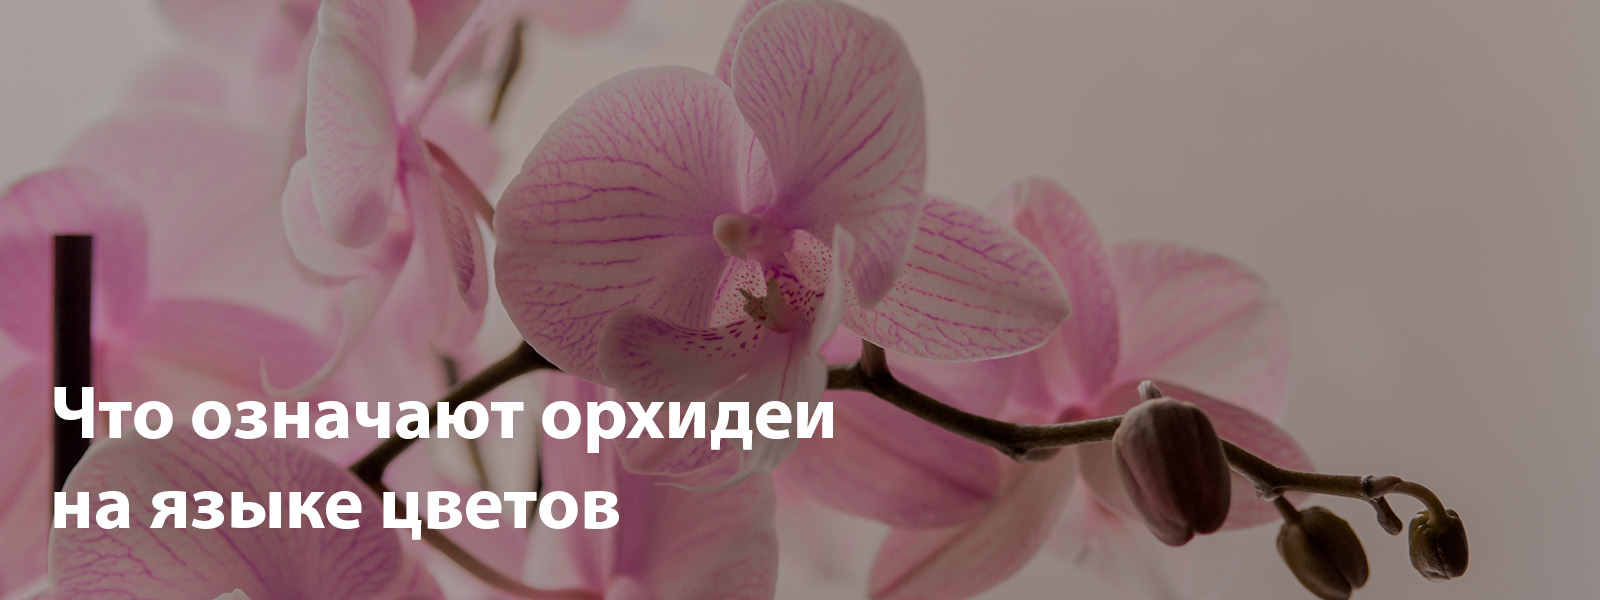 Что означают орхидеи на языке цветов